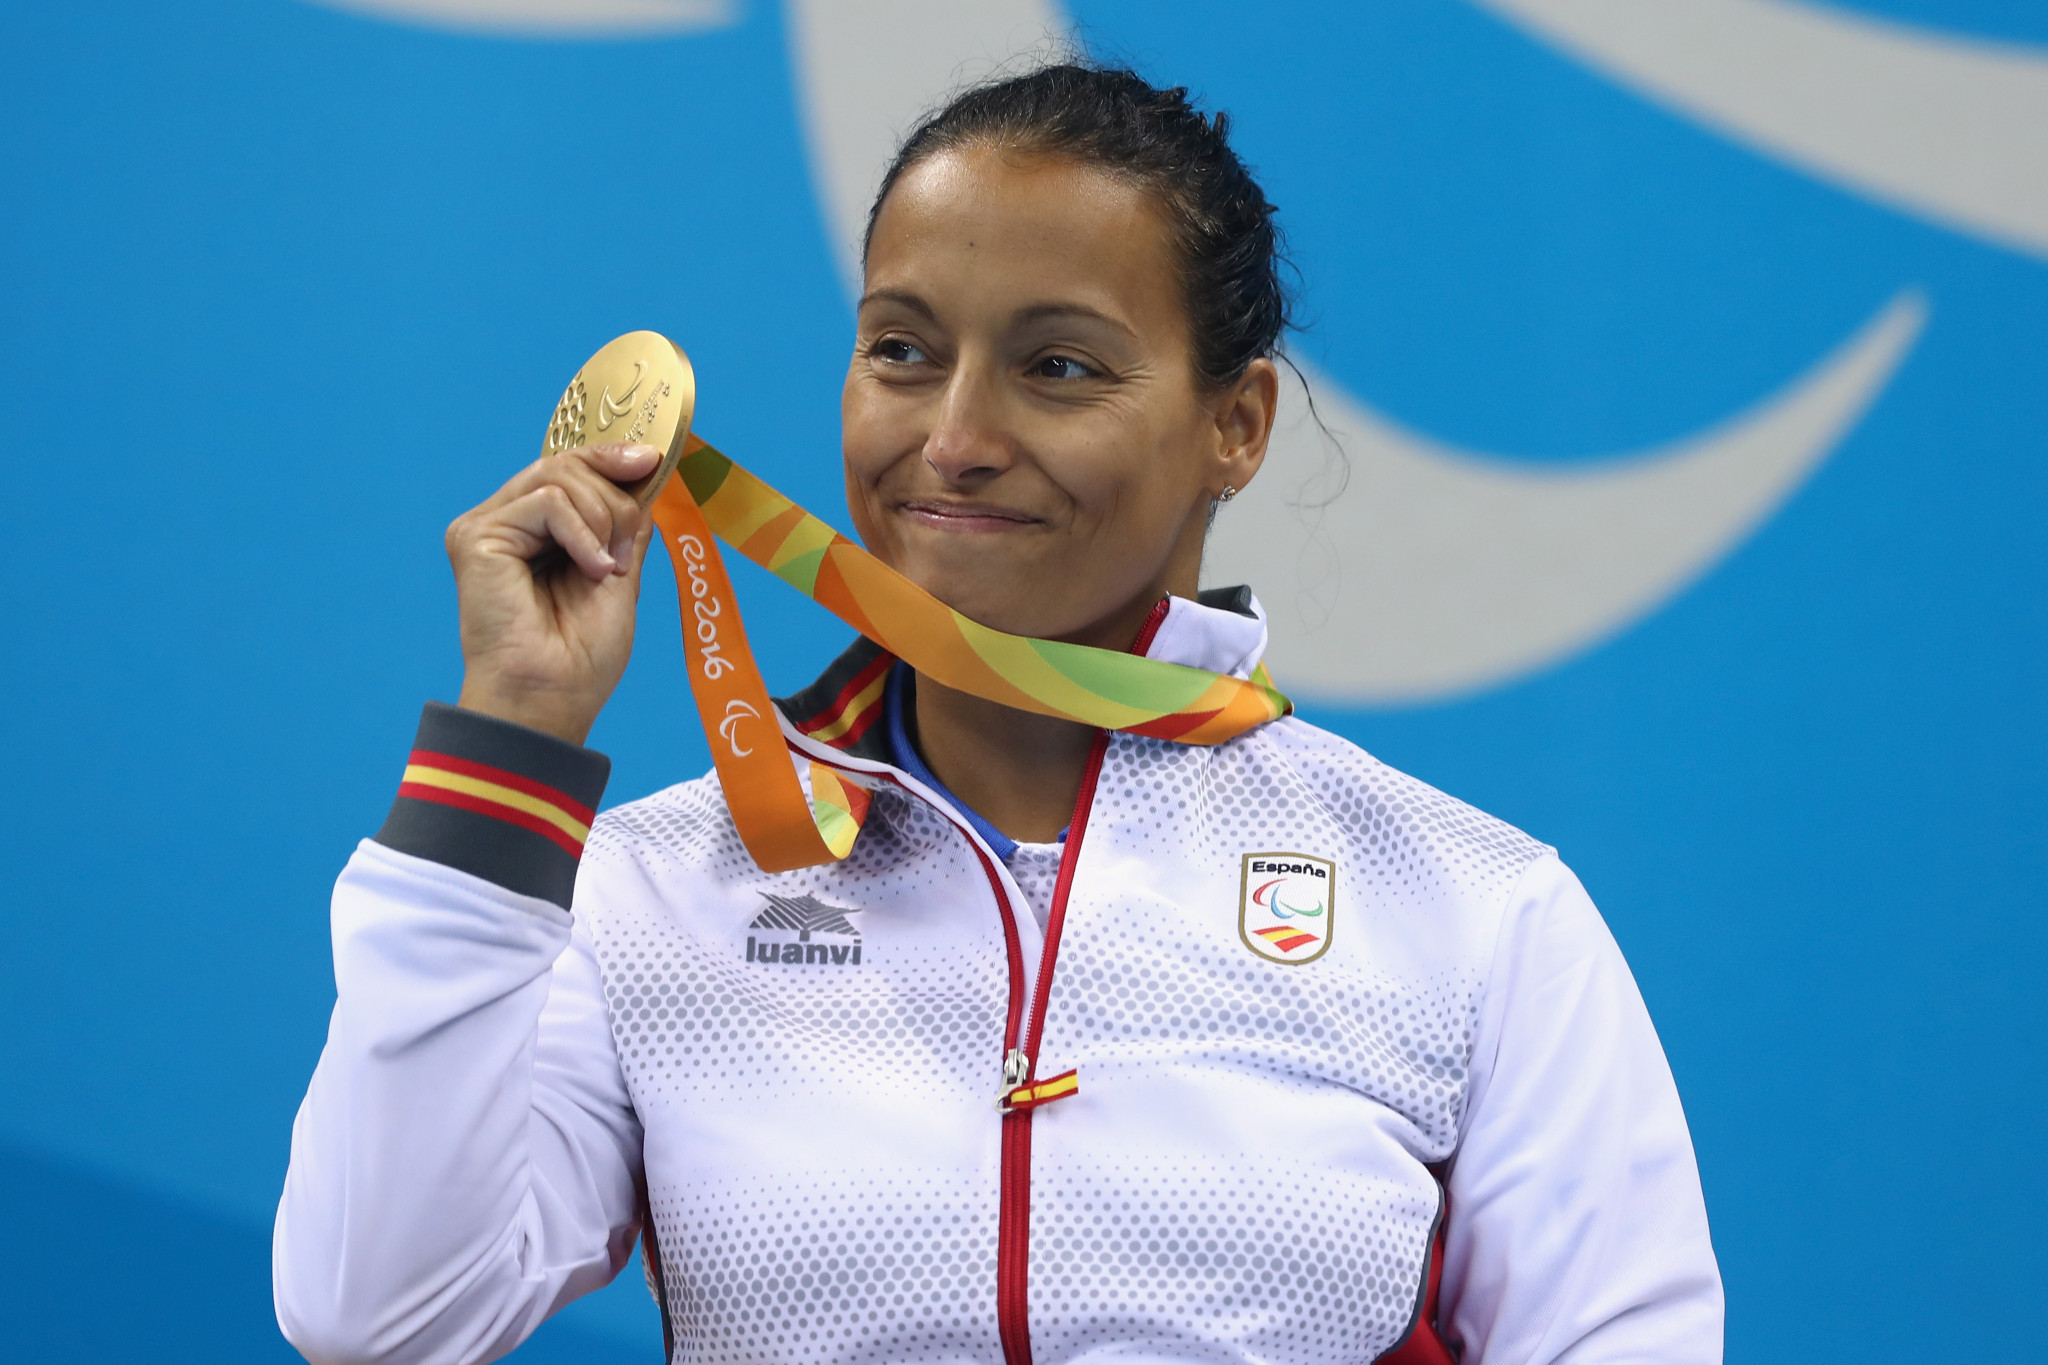 Una imagen de la siete veces campeona española de natación paralímpica Teresa Perales en el autobús © Getty Images